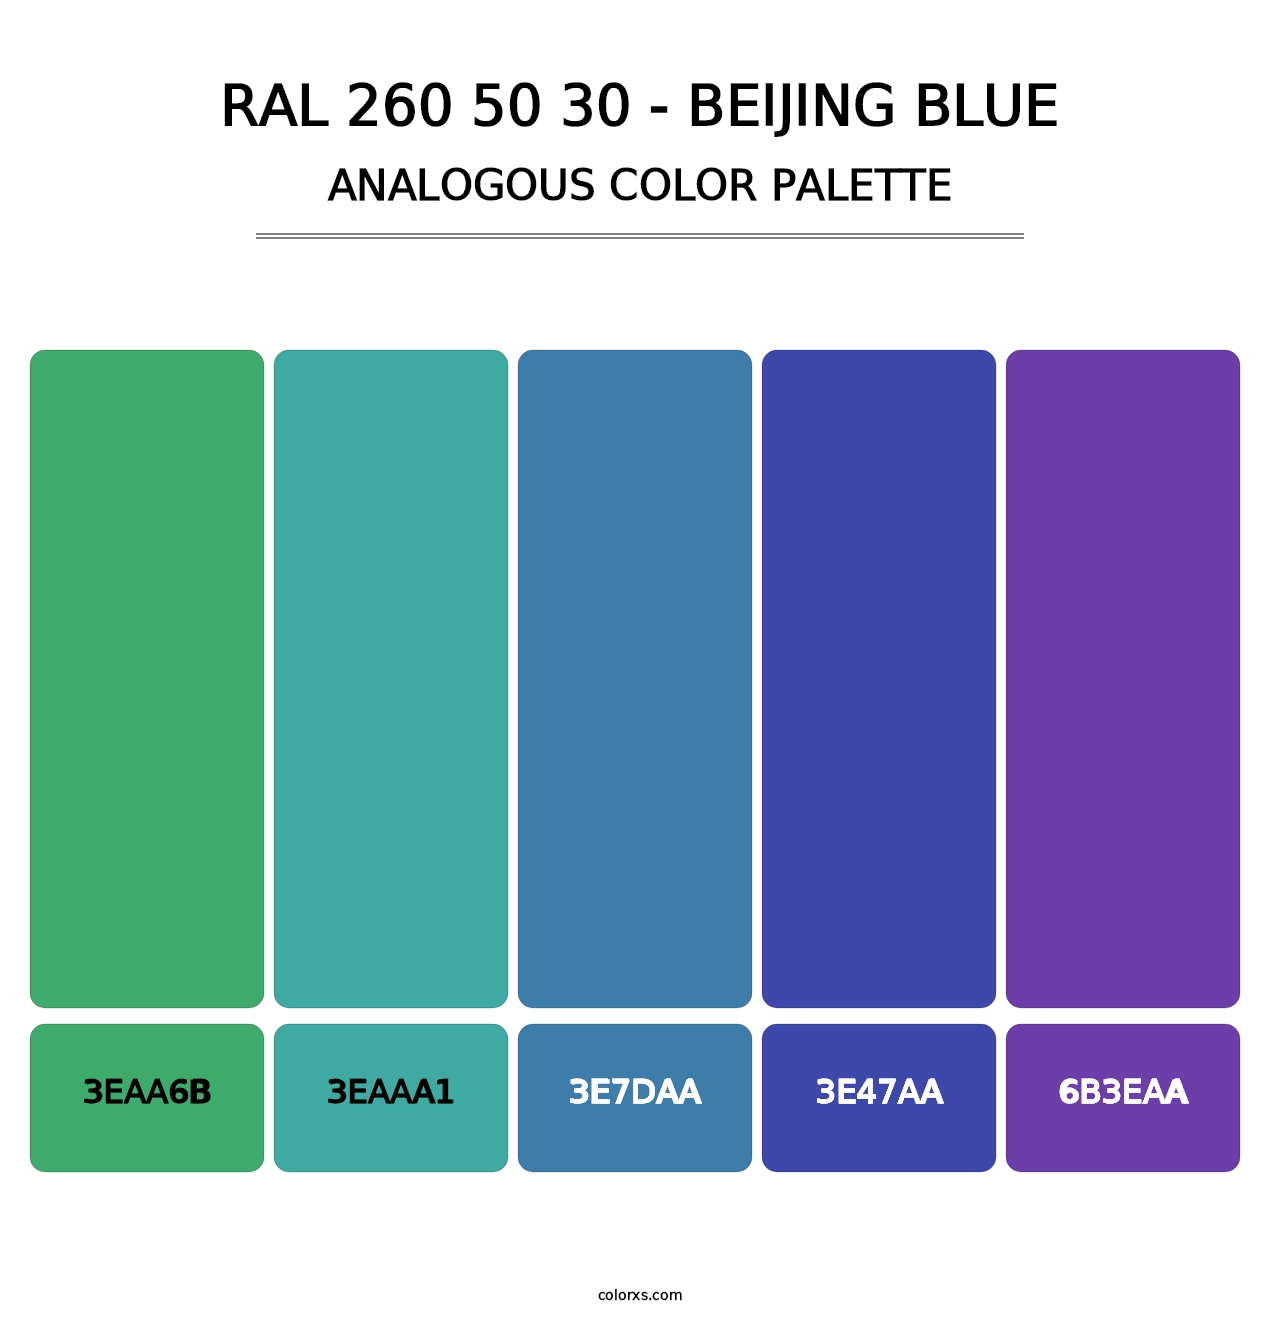 RAL 260 50 30 - Beijing Blue - Analogous Color Palette